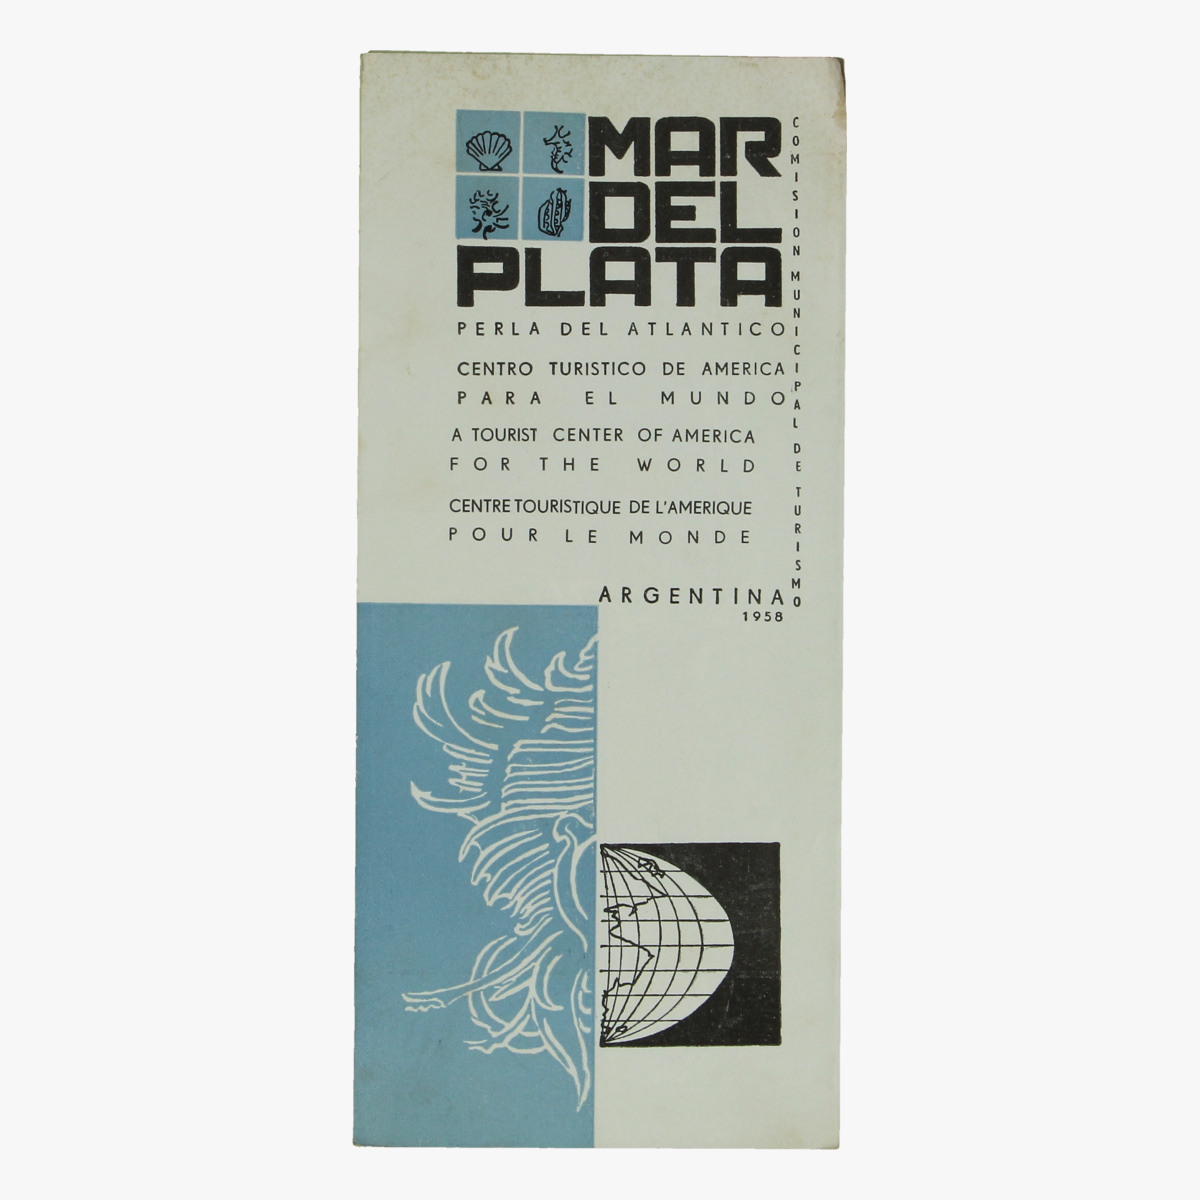 Afbeeldingen van expo 58 folder mar del plata republica argentina 